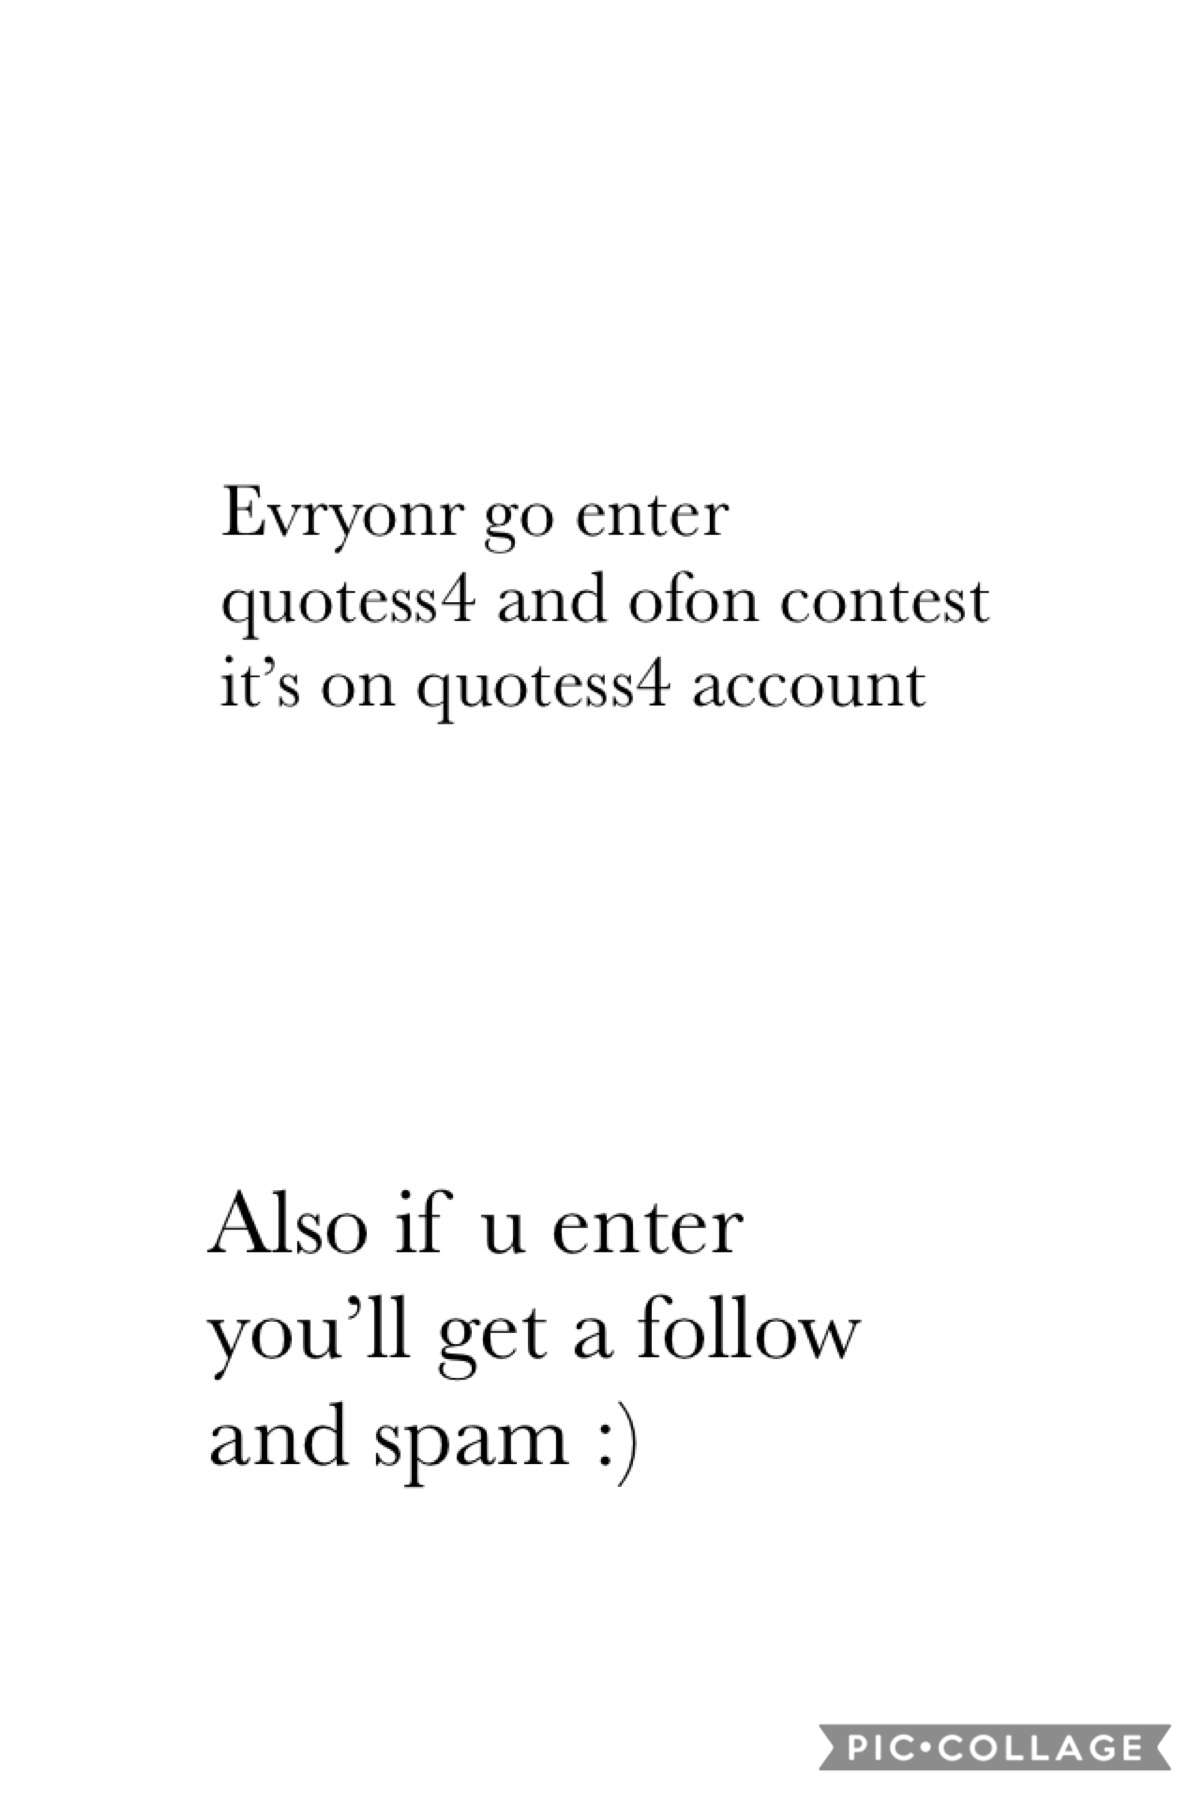 Enter.. Enter..Enter @quotess4